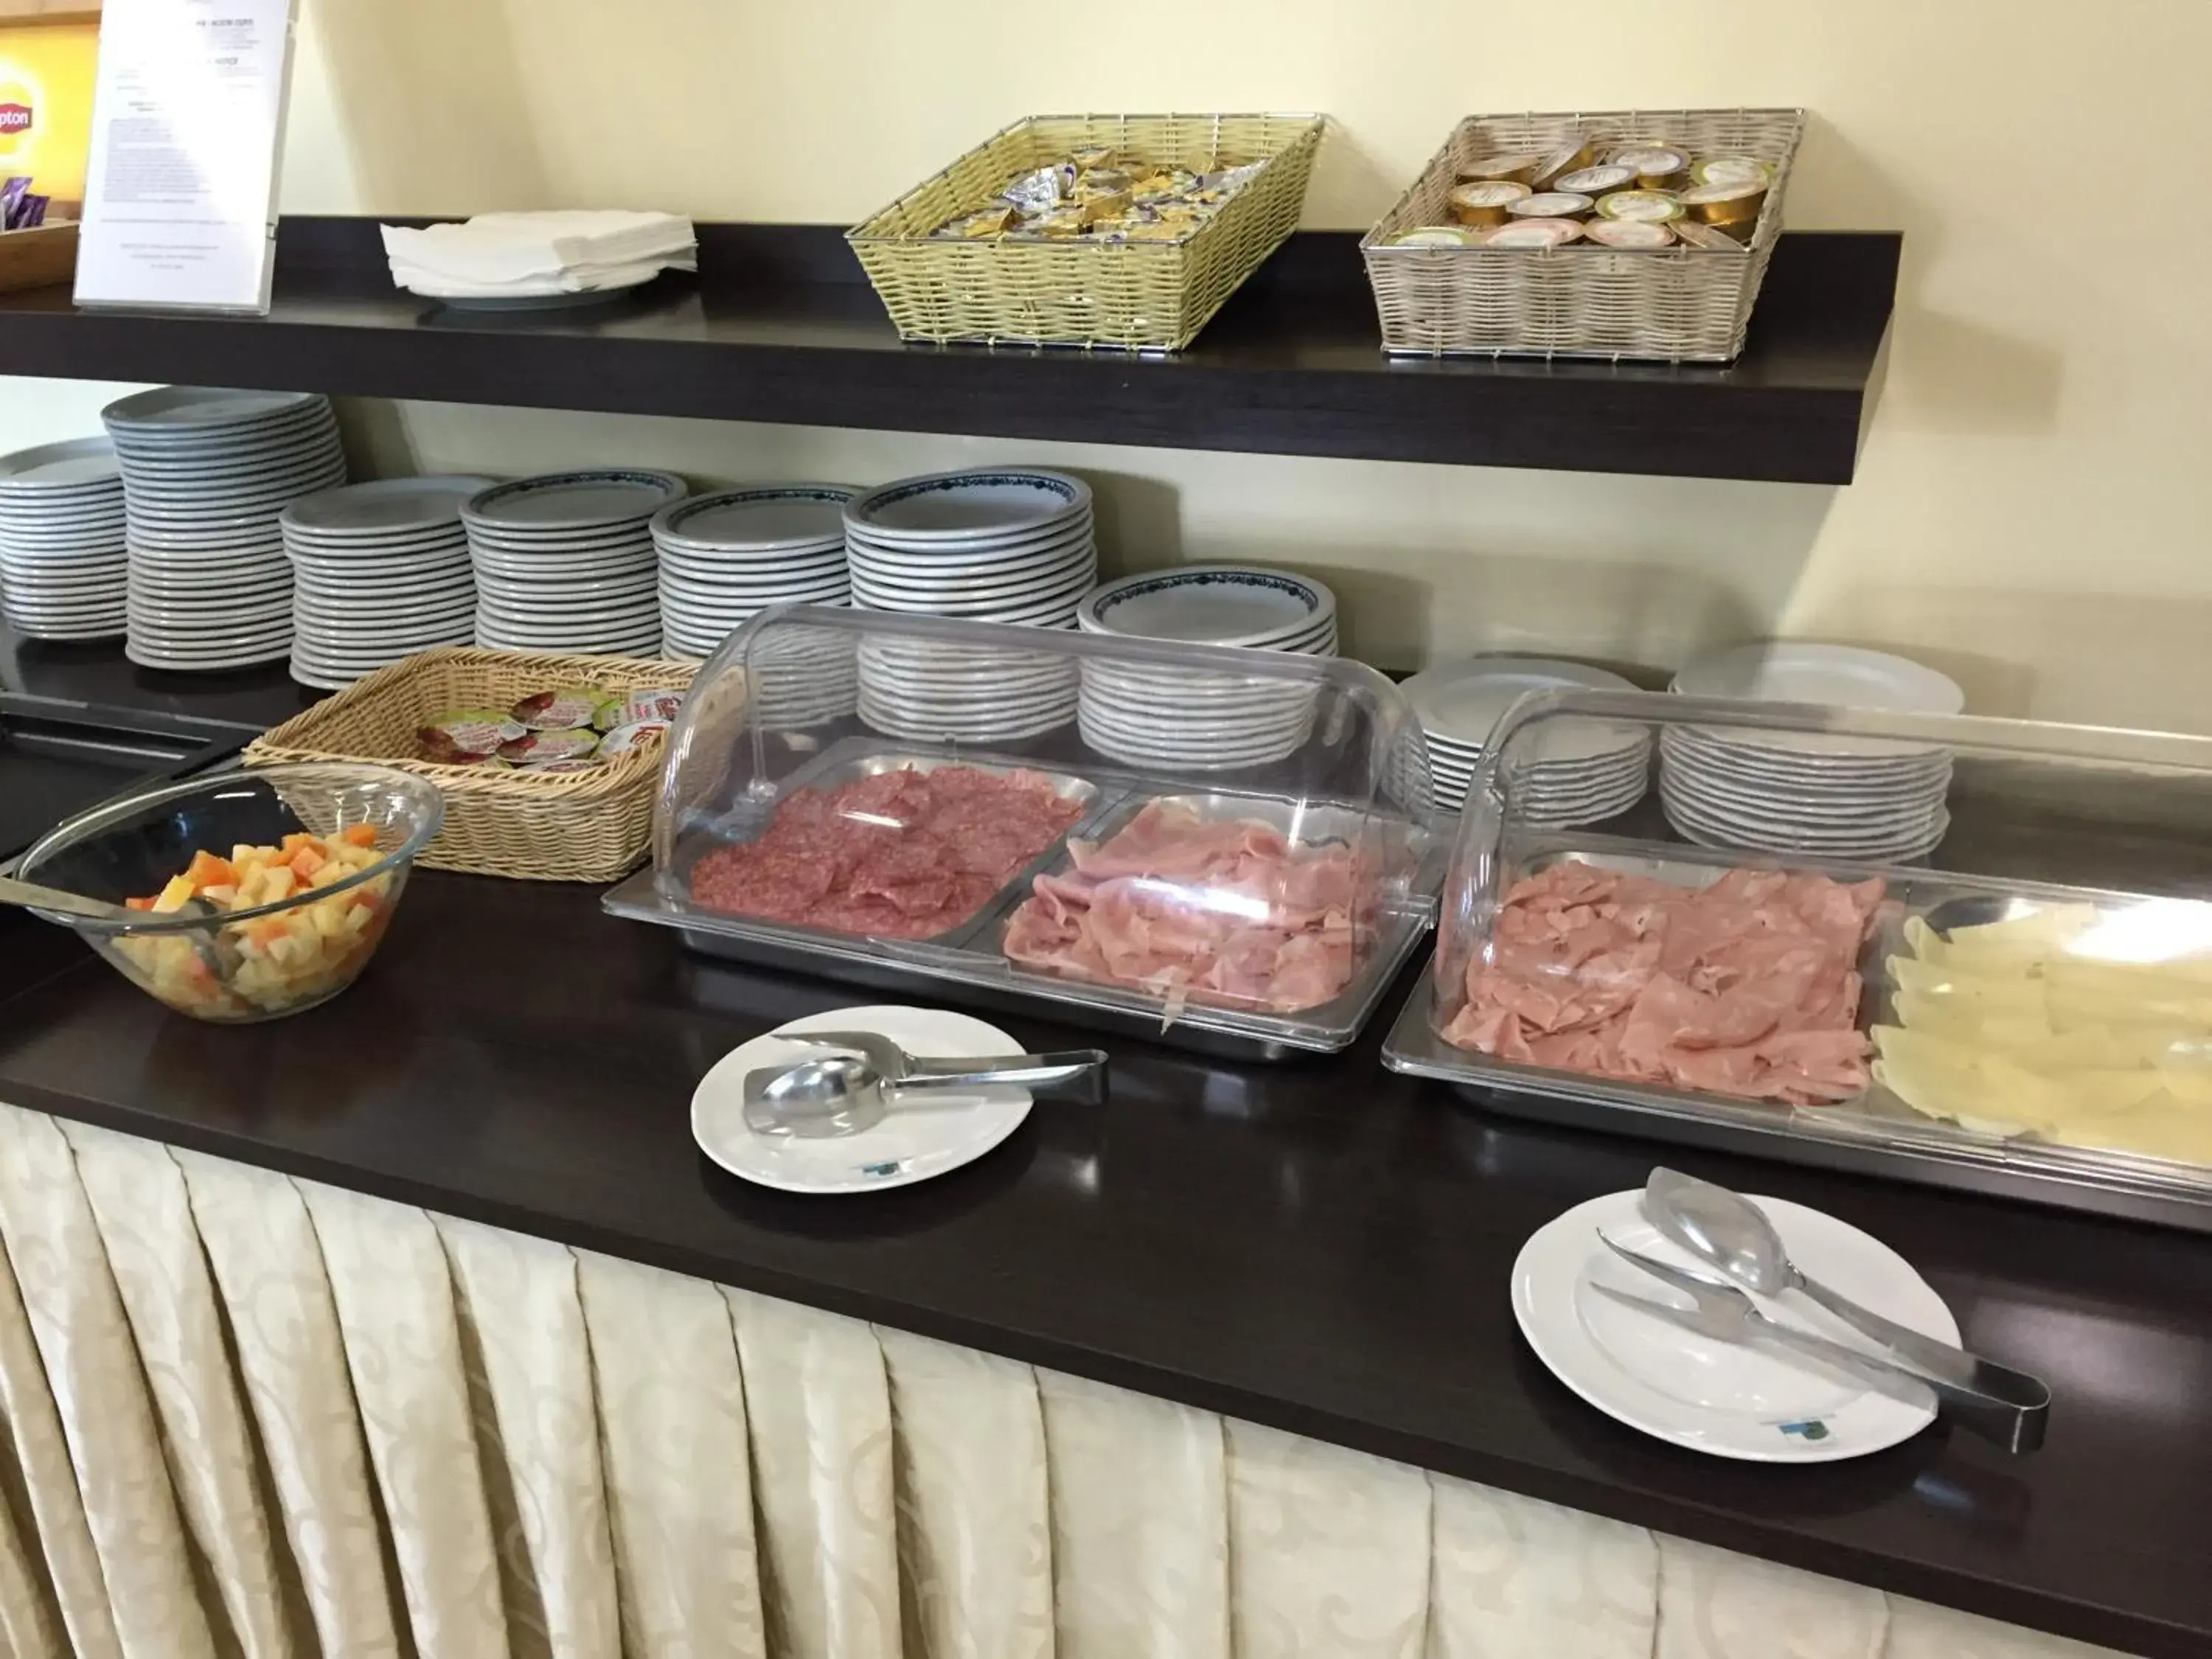 Buffet breakfast in Hotel Beau Soleil